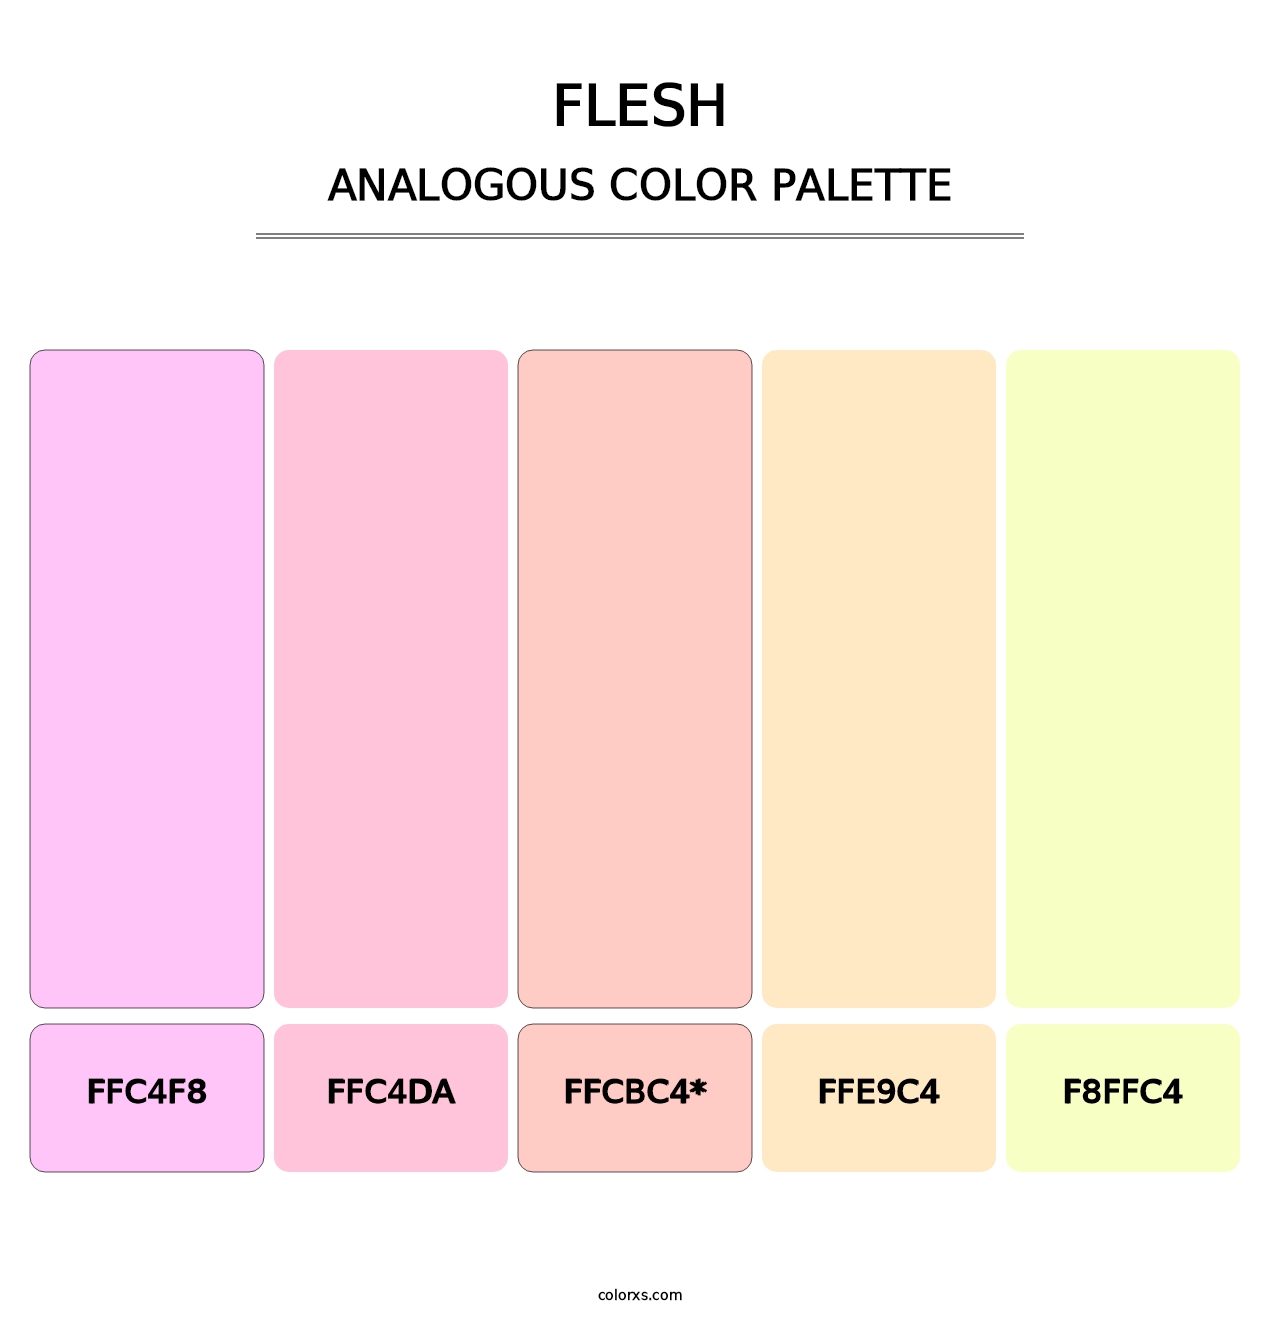 Flesh - Analogous Color Palette